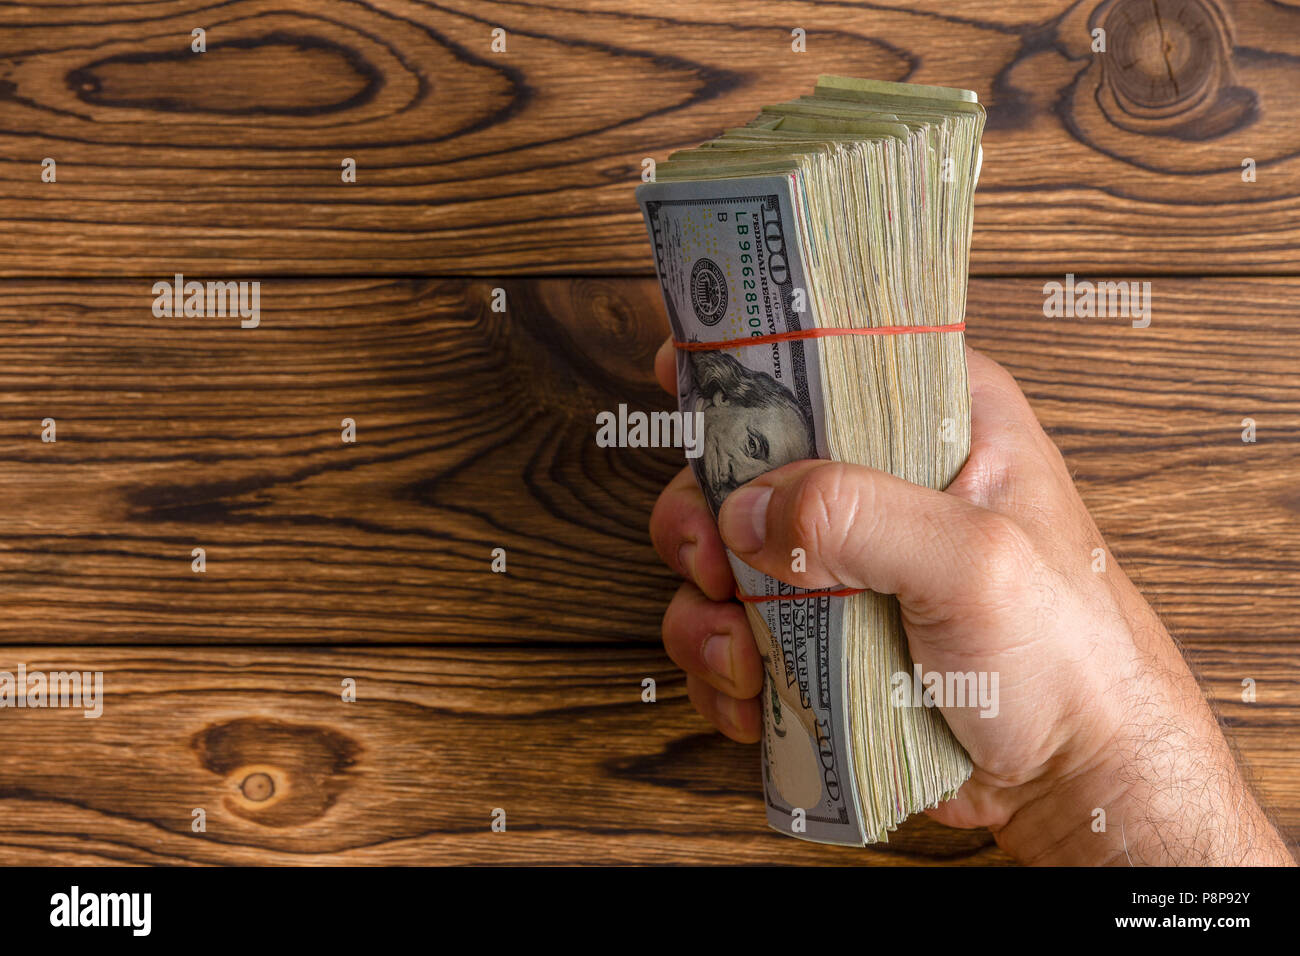 Homme tenant une grande poignée d'empilé 100 dollar bills ou Benjamins agrippa fermement dans son poing sur une table en bois rustique avec copie espace Banque D'Images